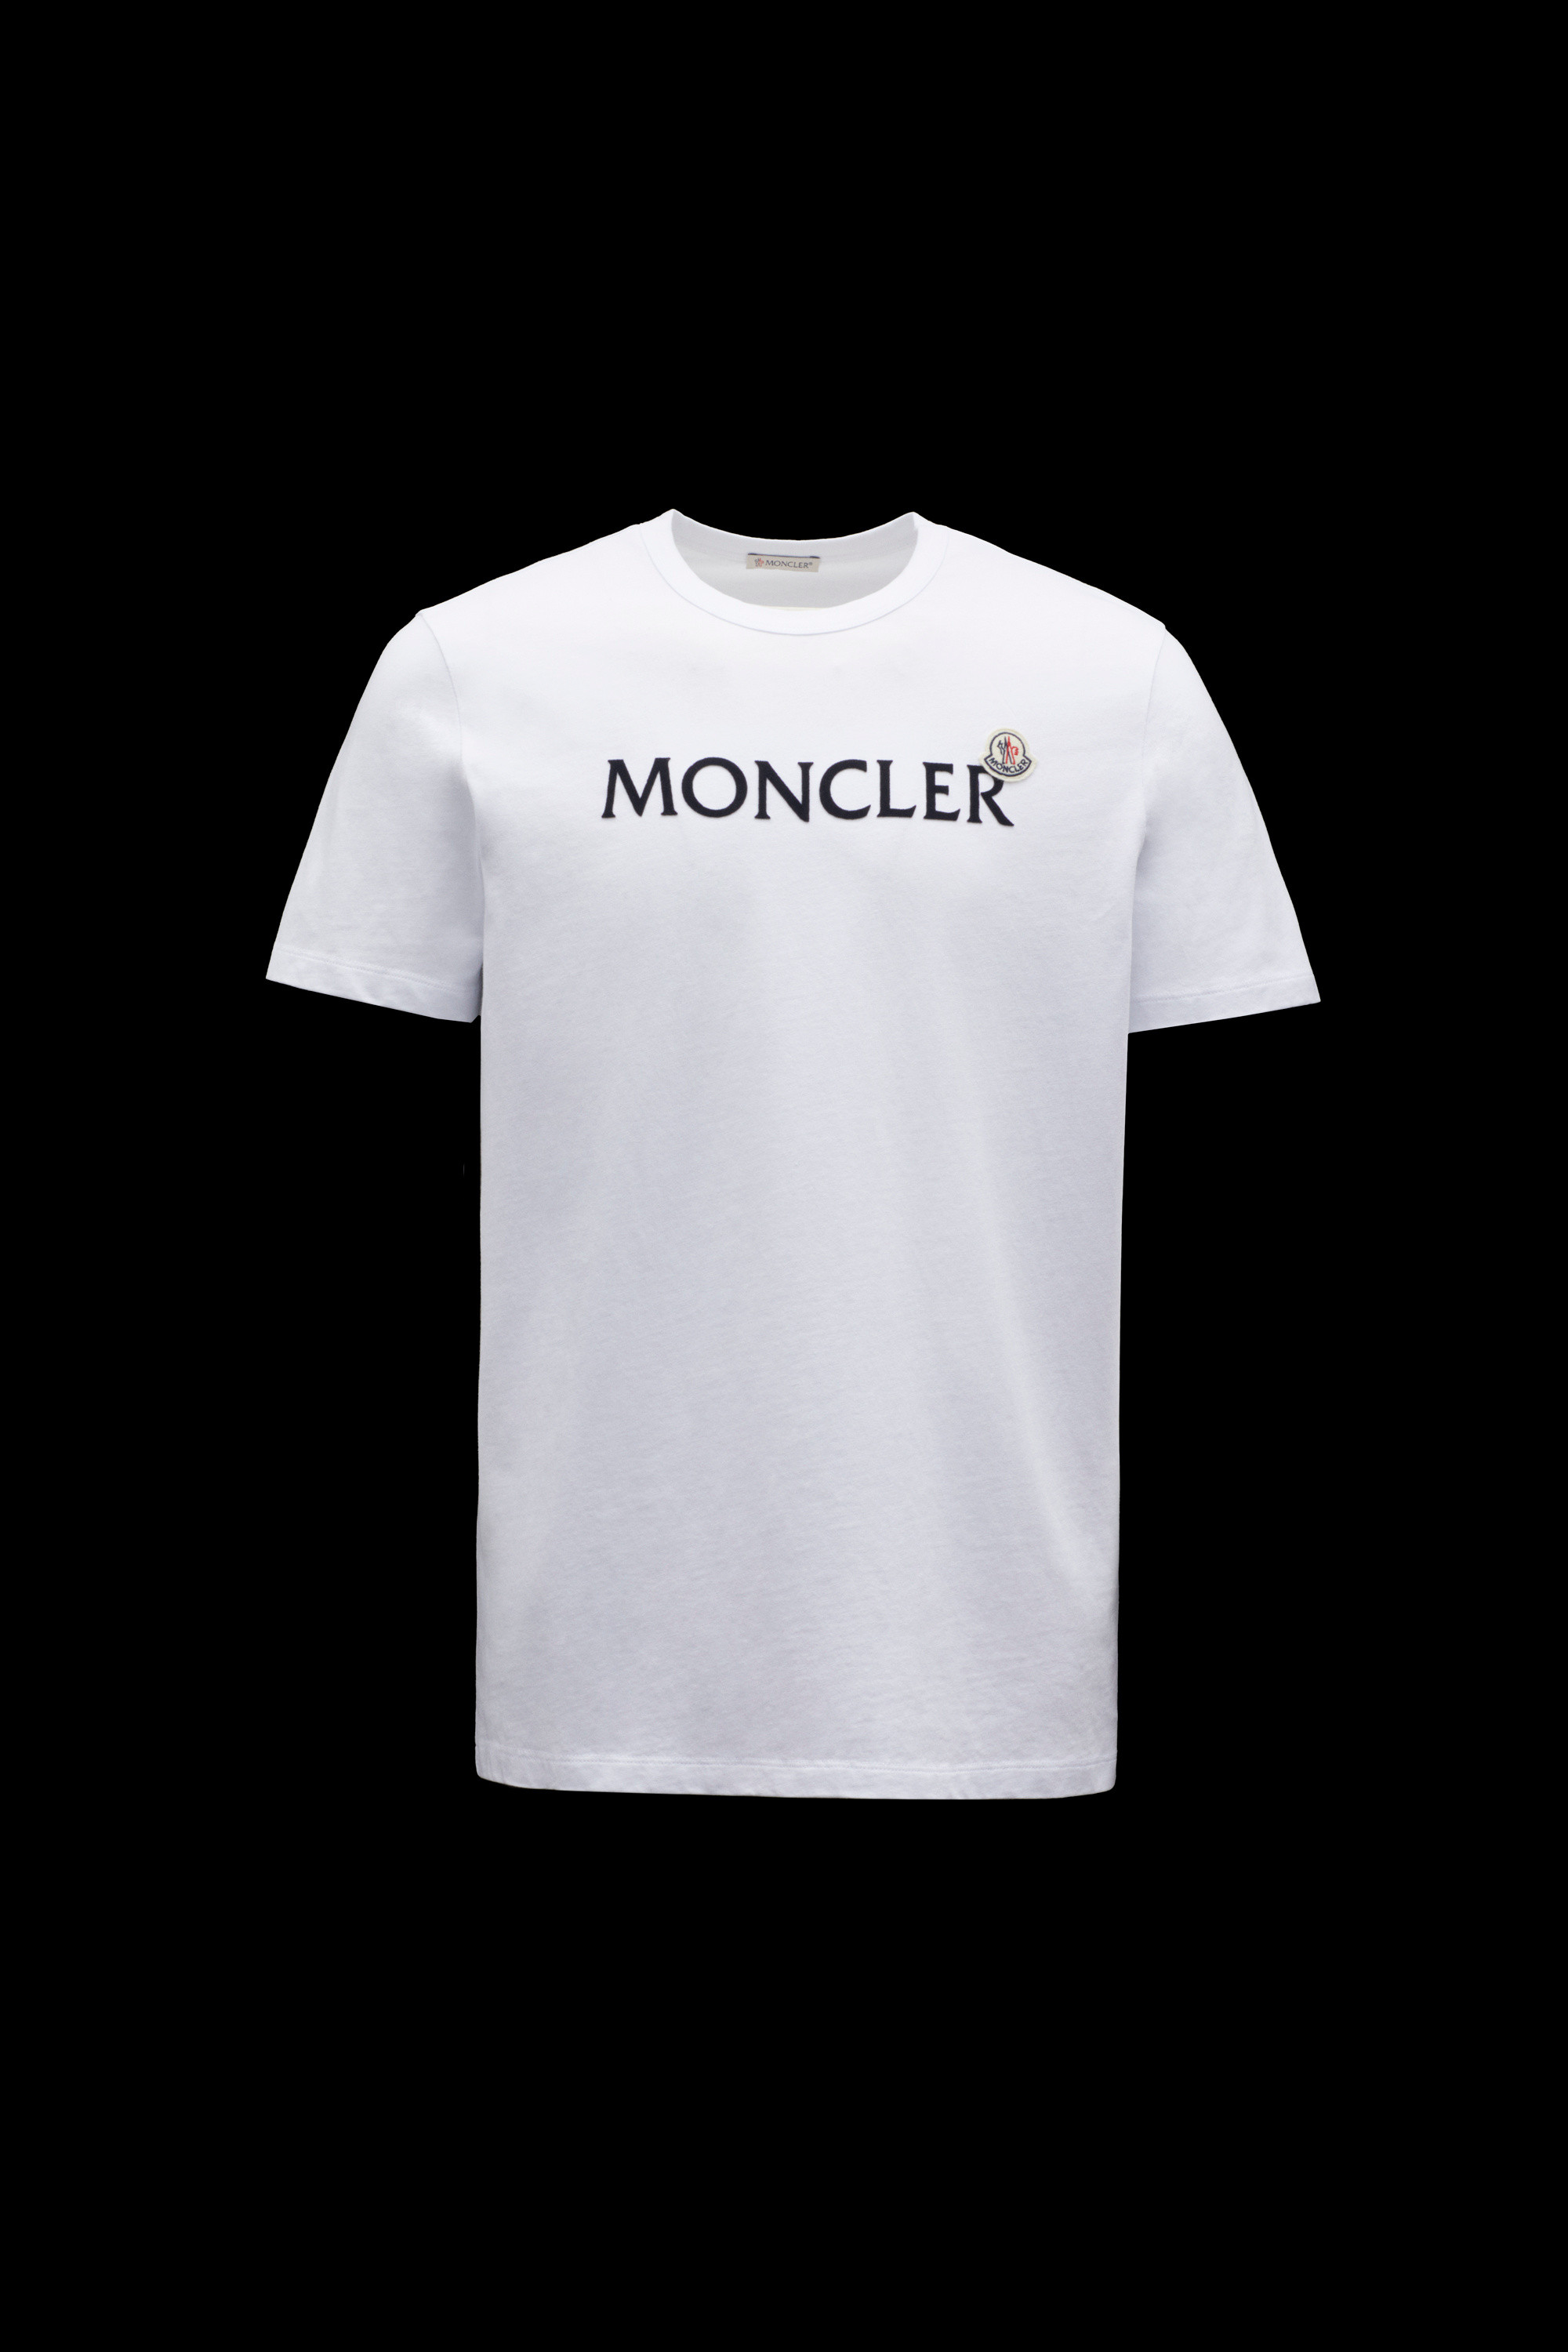 moncler logo t shirt Off 69% - www.gmcanantnag.net